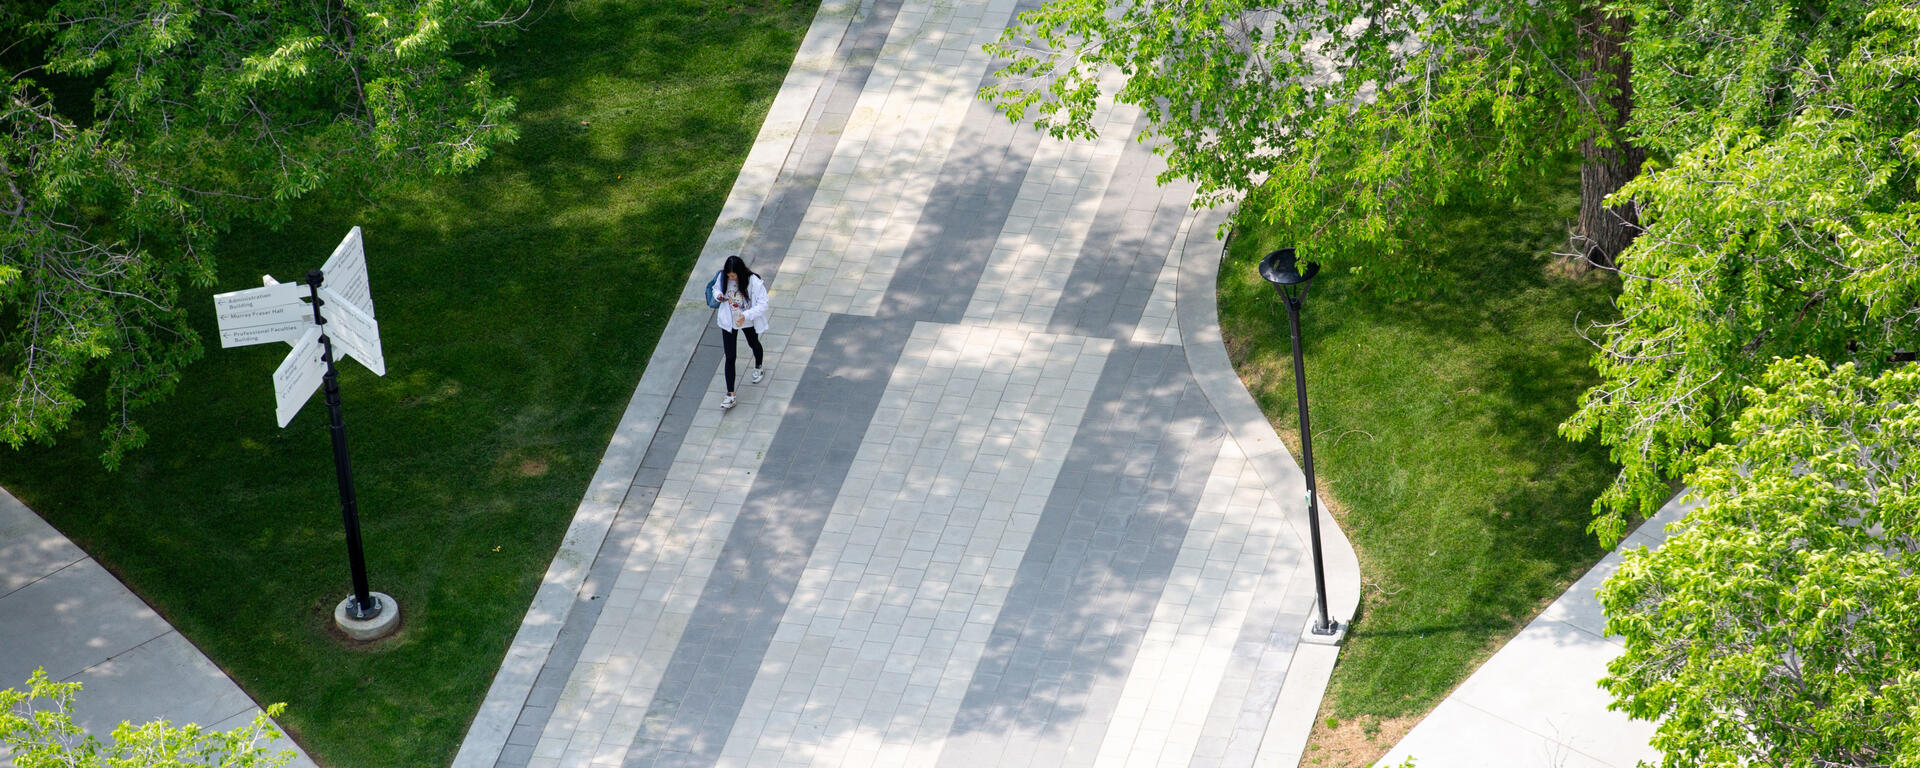 一个人在夏天穿过加州大学阿尔加里分校校园的鸟瞰图。 